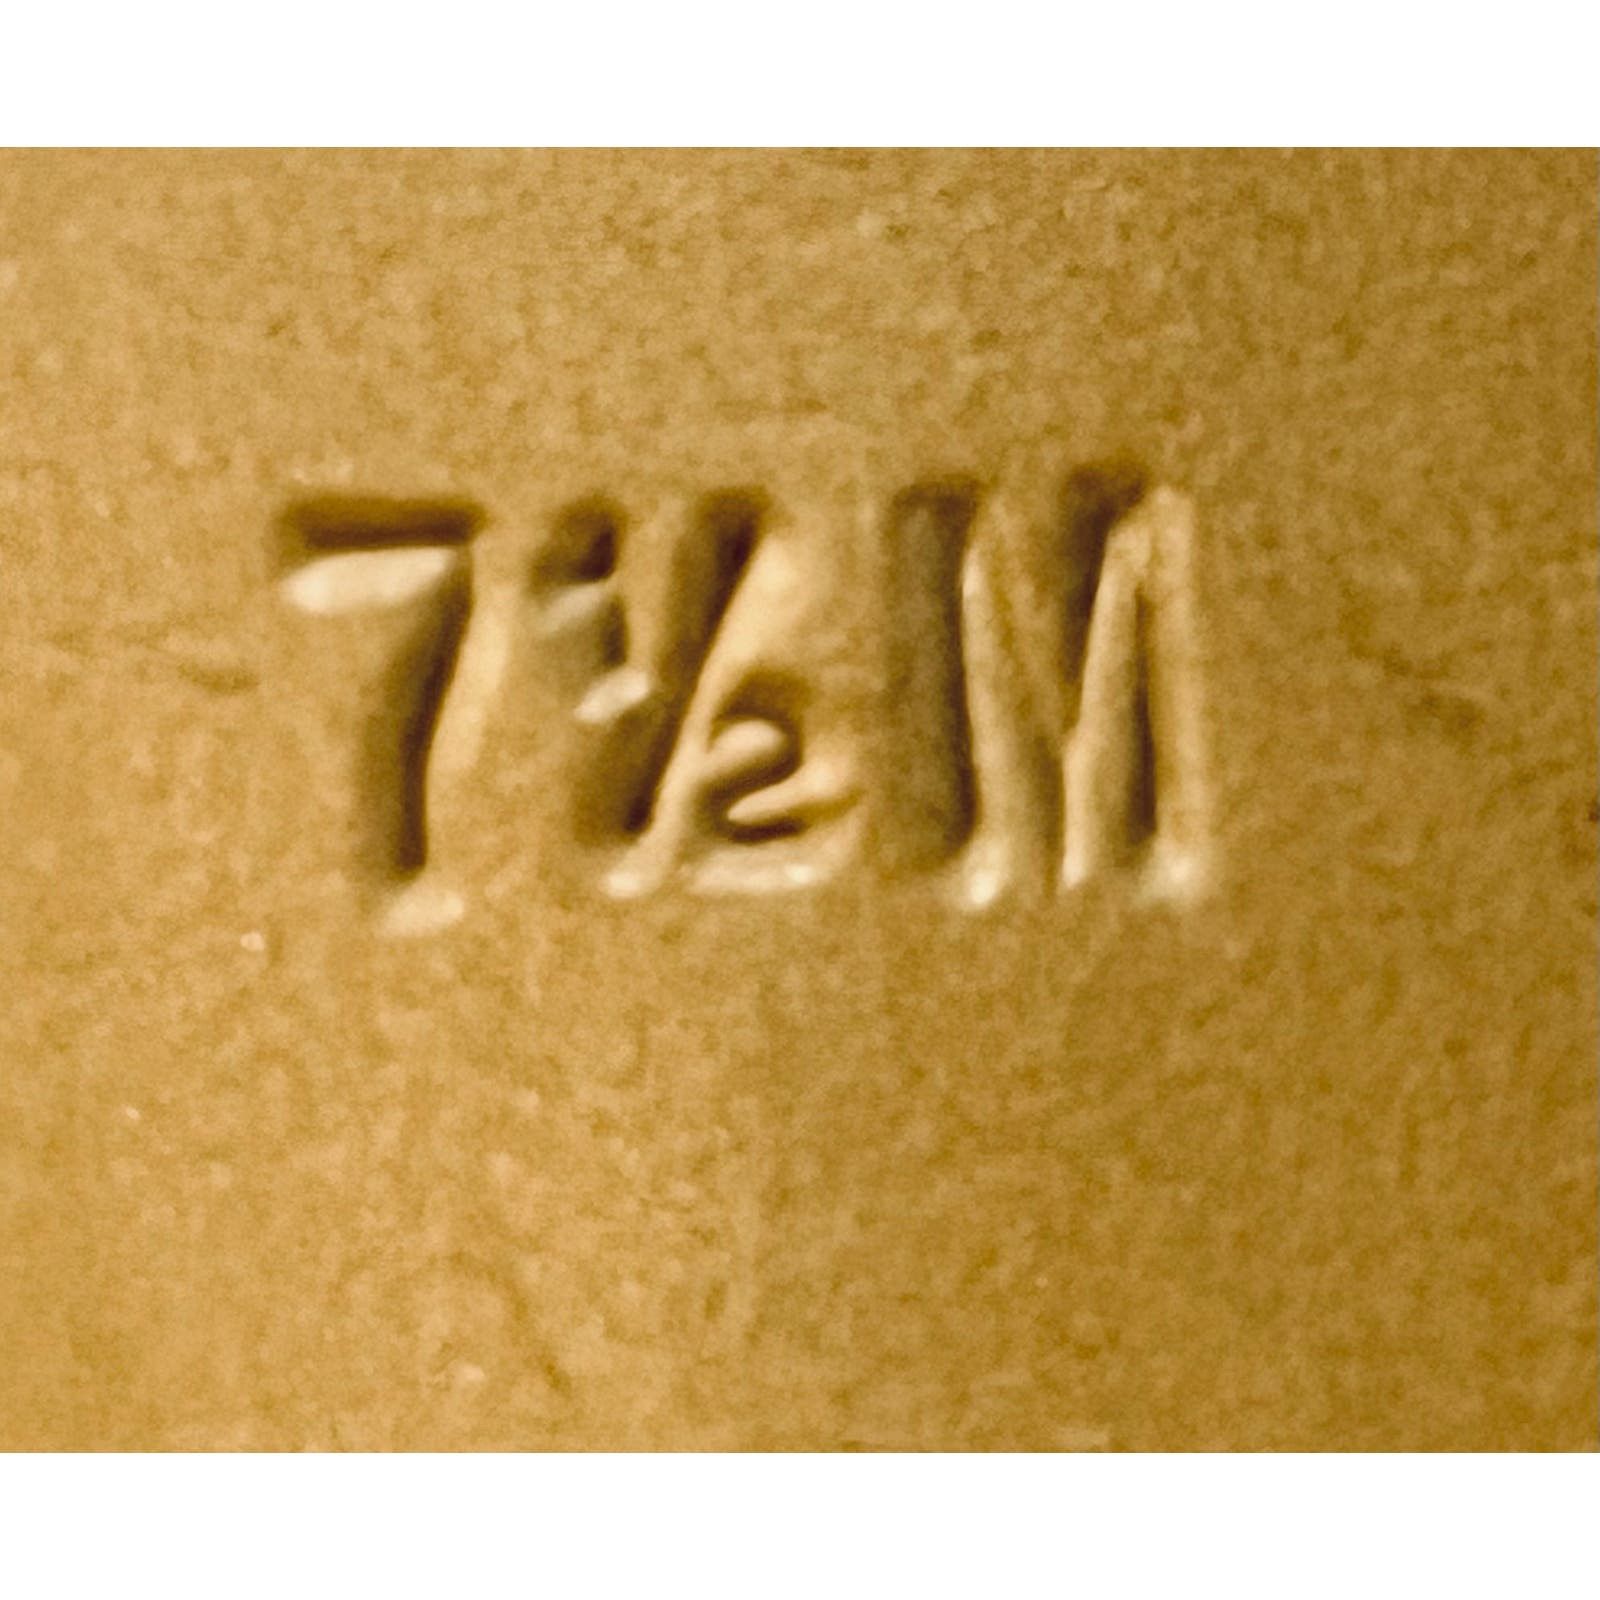 Other Rare VTG Garolini rose gold slingback peep toes, size 7.5M Size US 7.5 / IT 37.5 - 7 Thumbnail